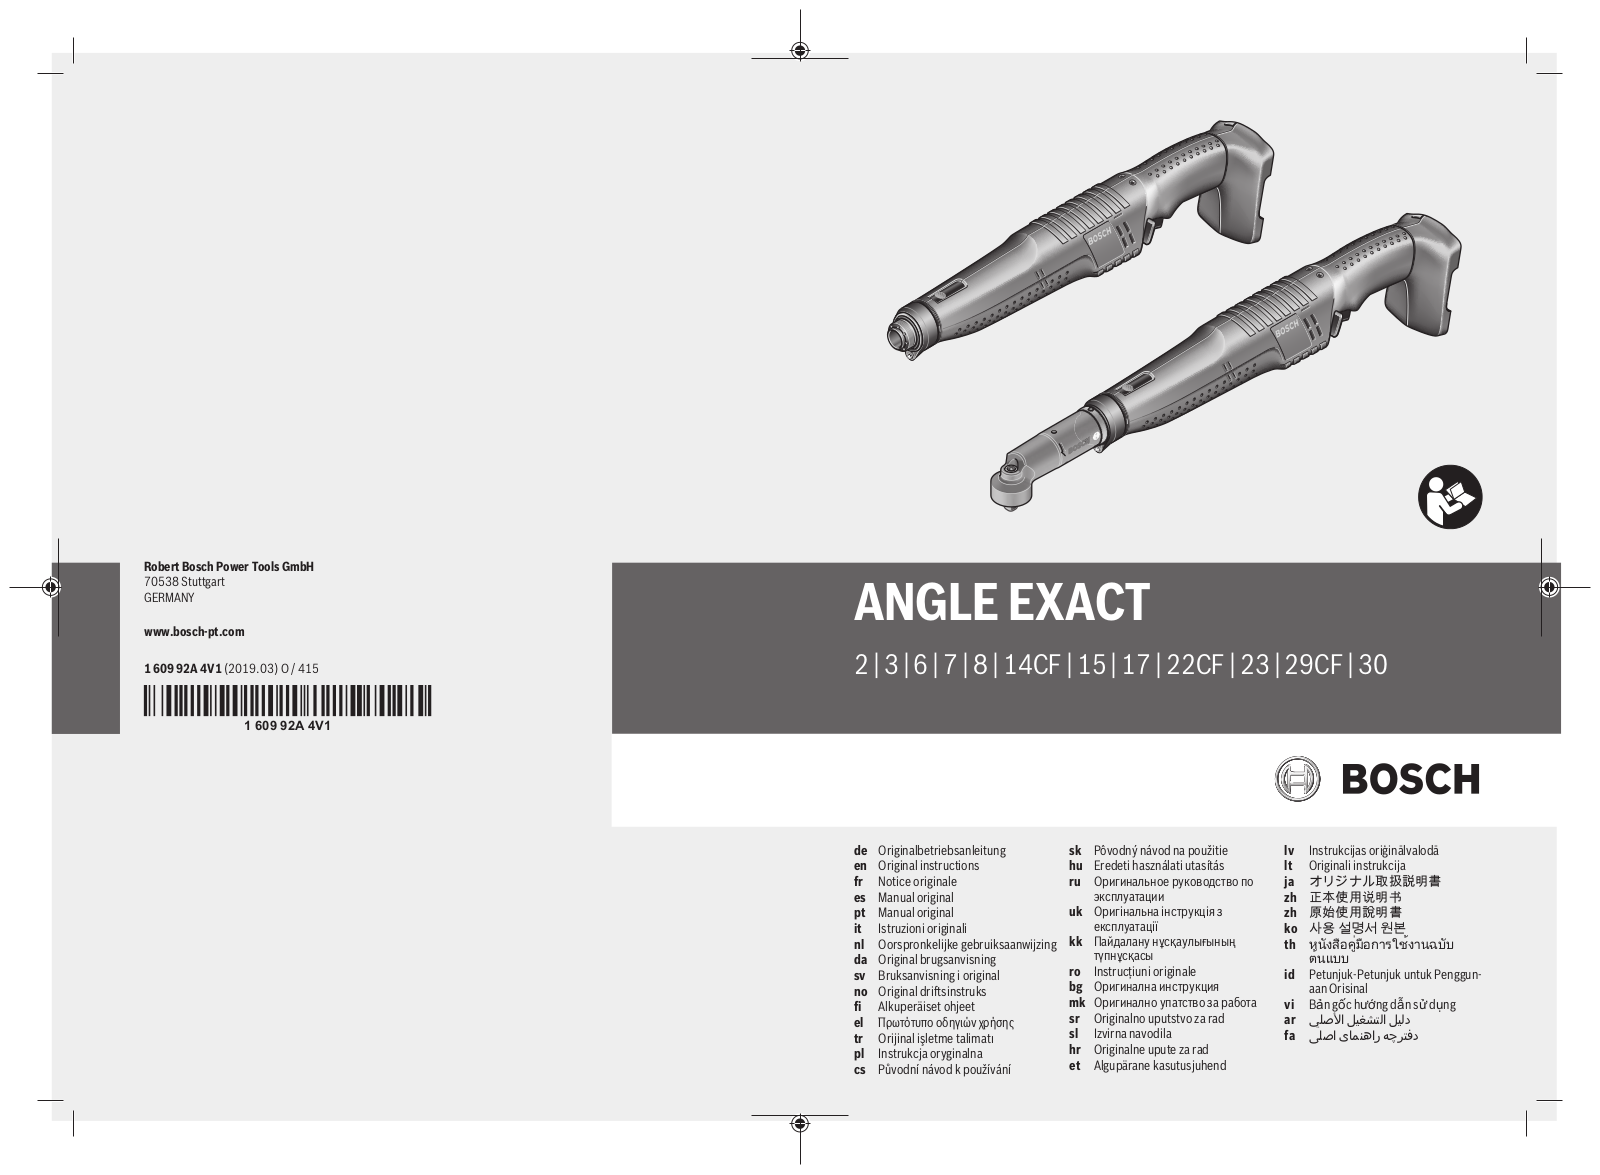 Bosch ANGLE EXACT 2, ANGLE EXACT 3, ANGLE EXACT 6, ANGLE EXACT 7, ANGLE EXACT 8 User Manual